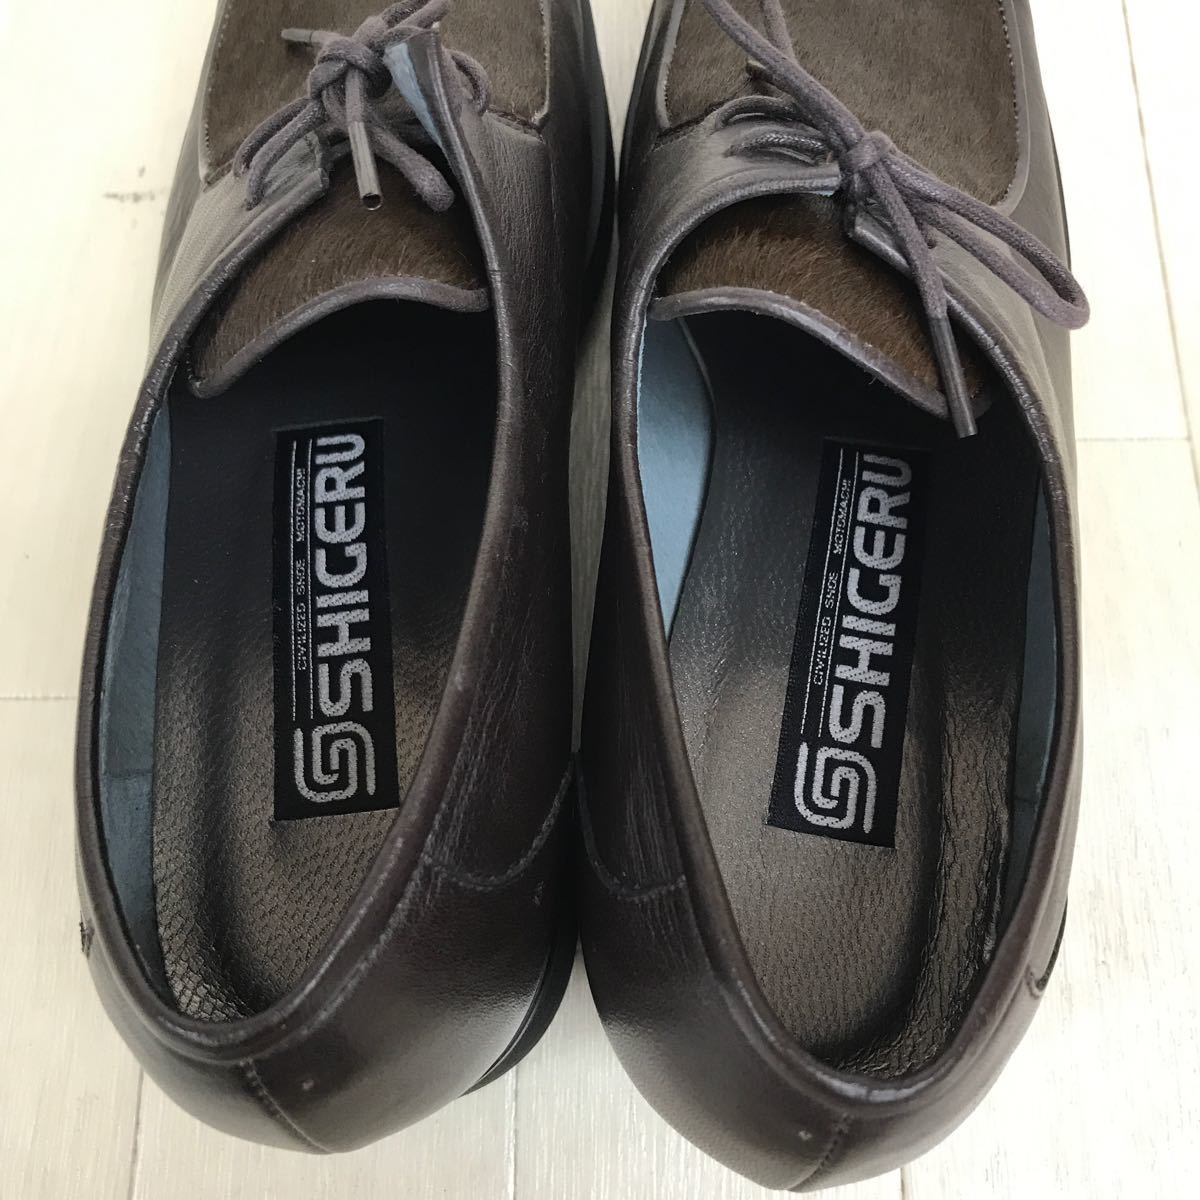 13377 прекрасный товар SHIGERU женский прогулочные туфли обувь оттенок коричневого 22.5cm обувь шнур модель женская обувь 